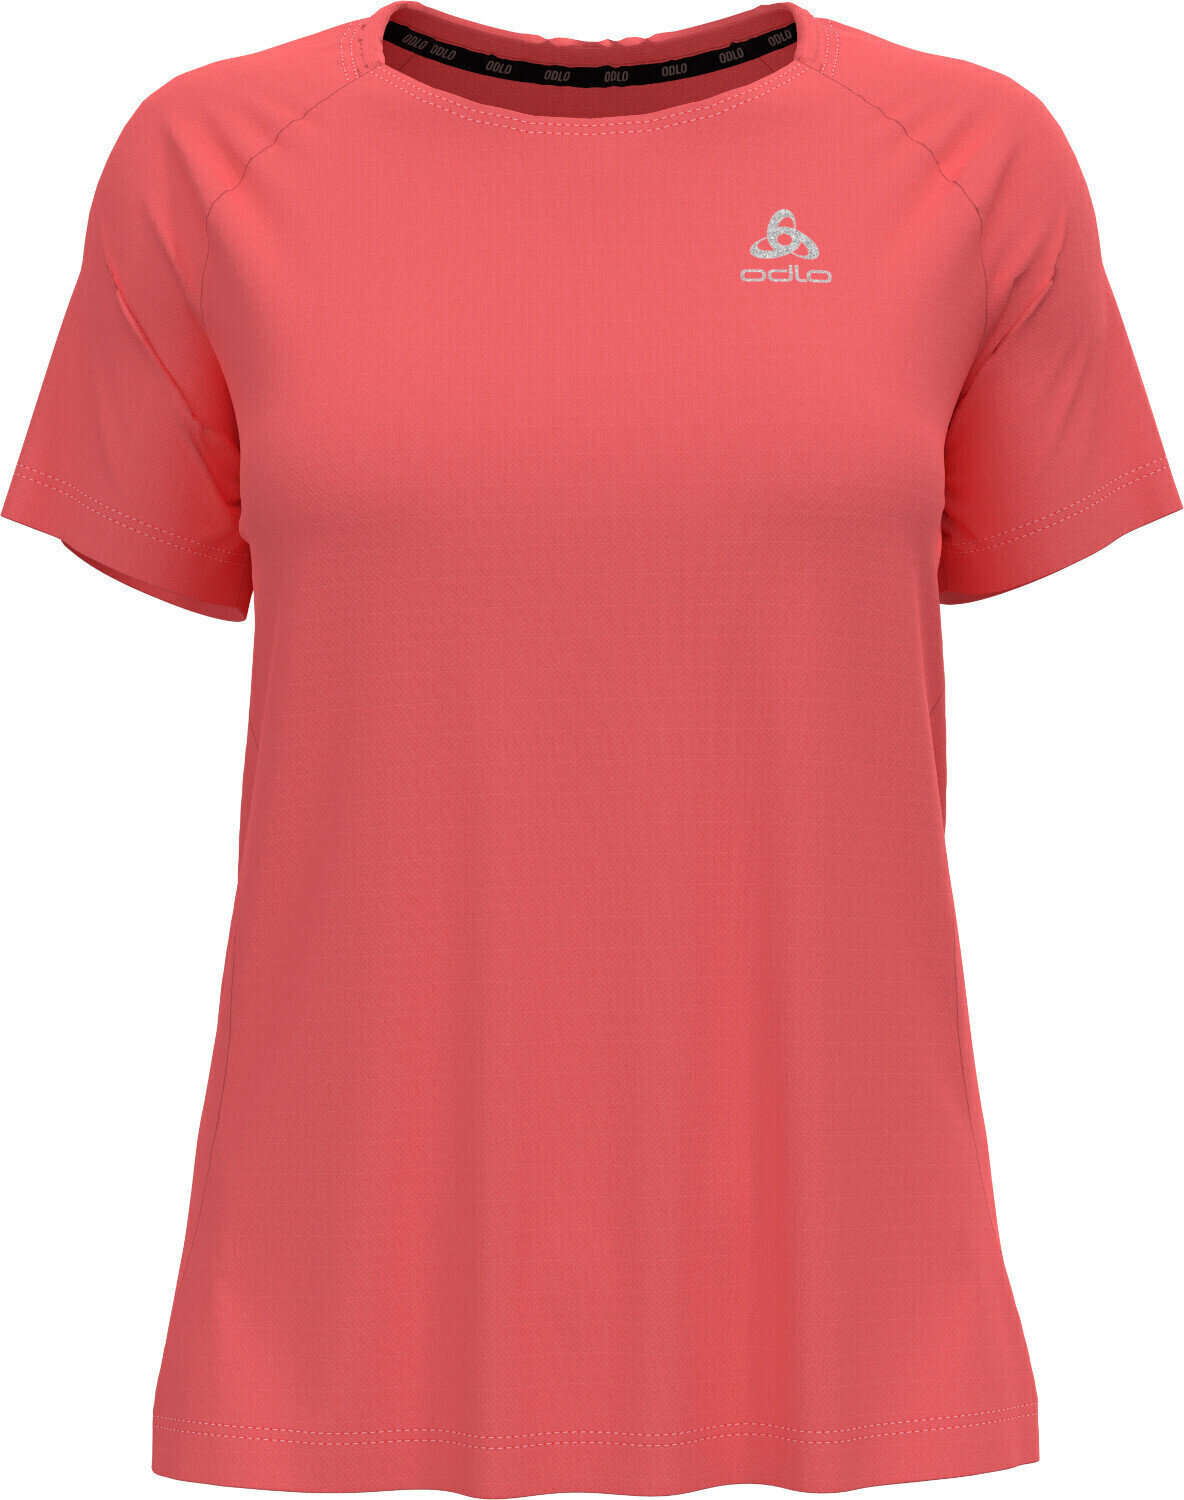 Běžecké tričko s krátkým rukávem
 Odlo Essential T-Shirt Siesta S Běžecké tričko s krátkým rukávem